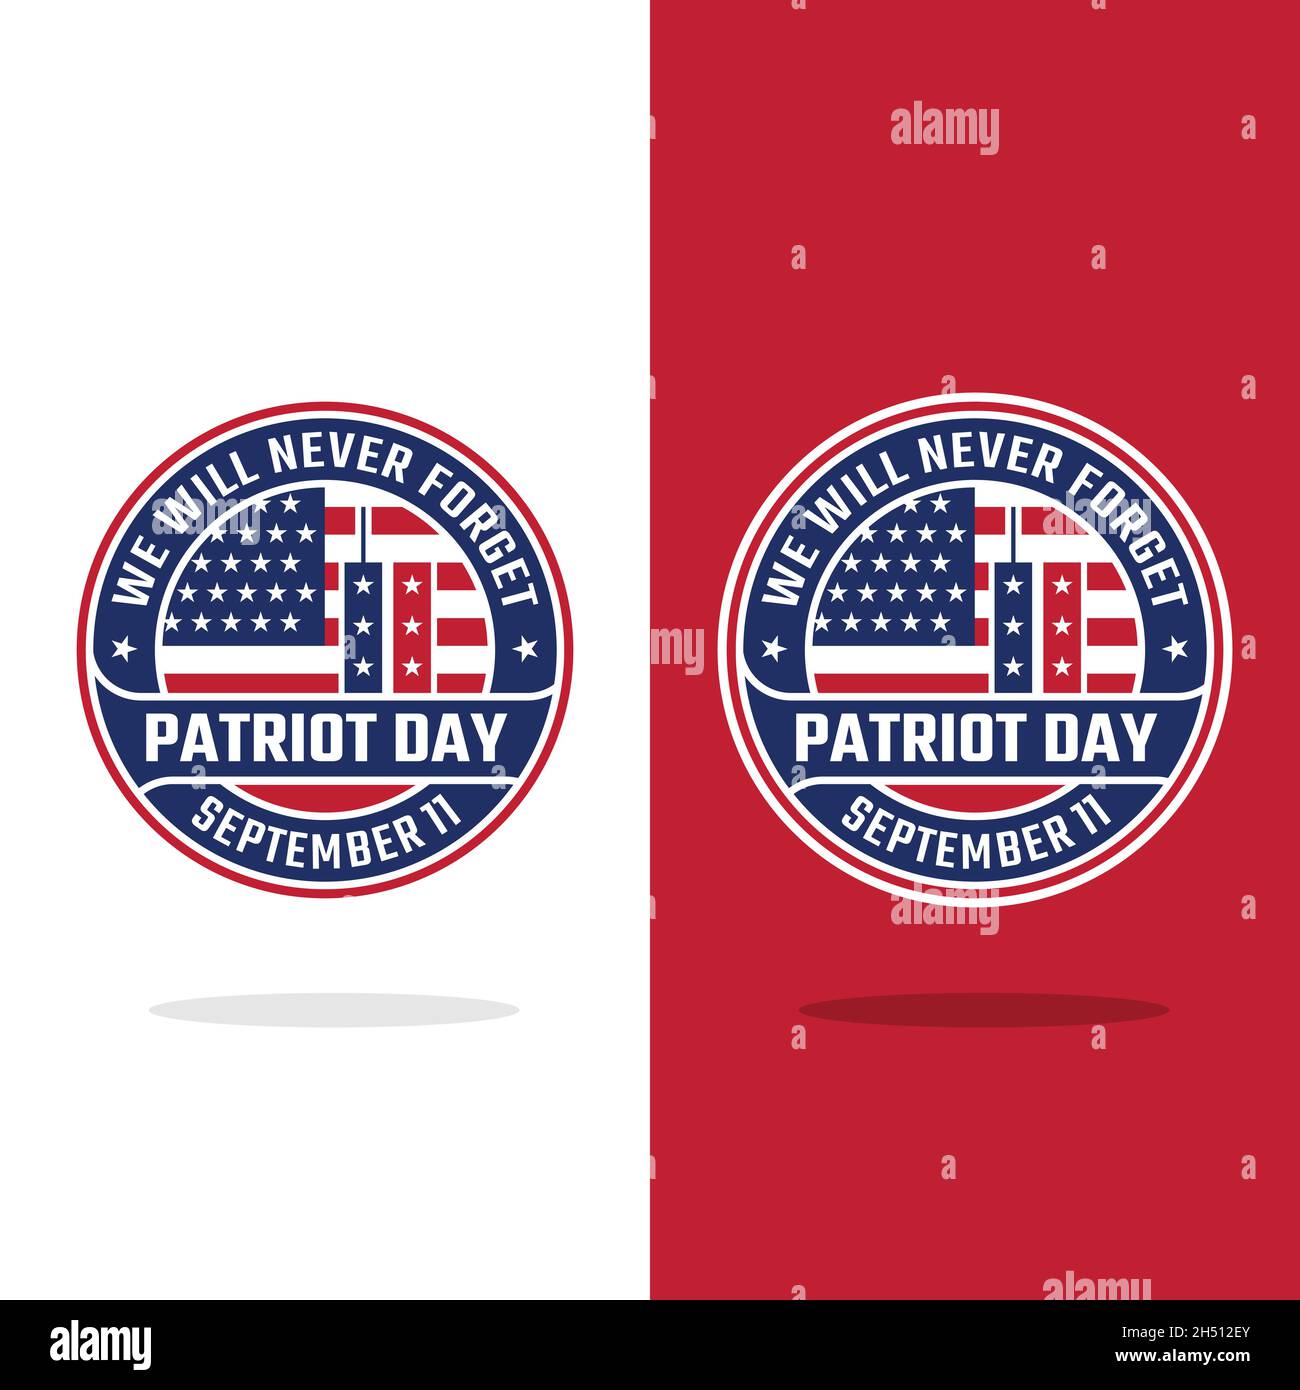 Patriot Day Wir Werden Nie Vergessen, Isolierte Emblem Badge Logo Design-Vorlage. Patriot Day 11. September mit USA Flag und Twin Towers. Stock Vektor